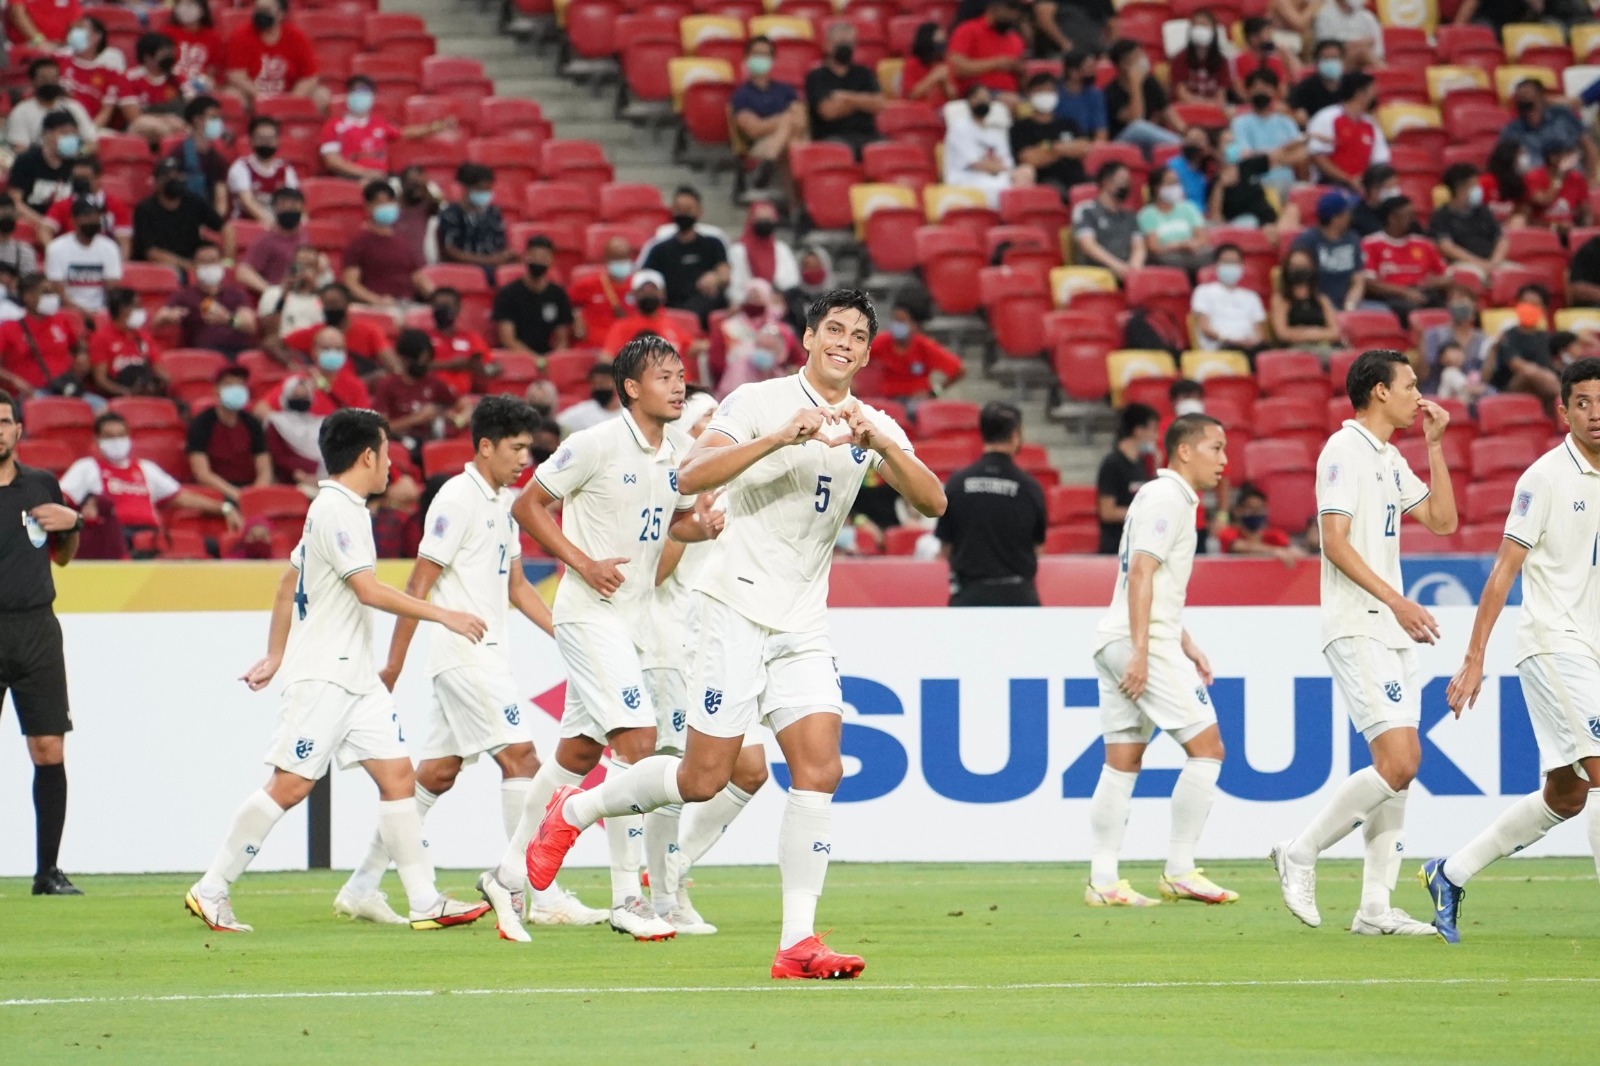 Thailand beat Singapore 2-0 to remain unbeaten in Suzuki Cup